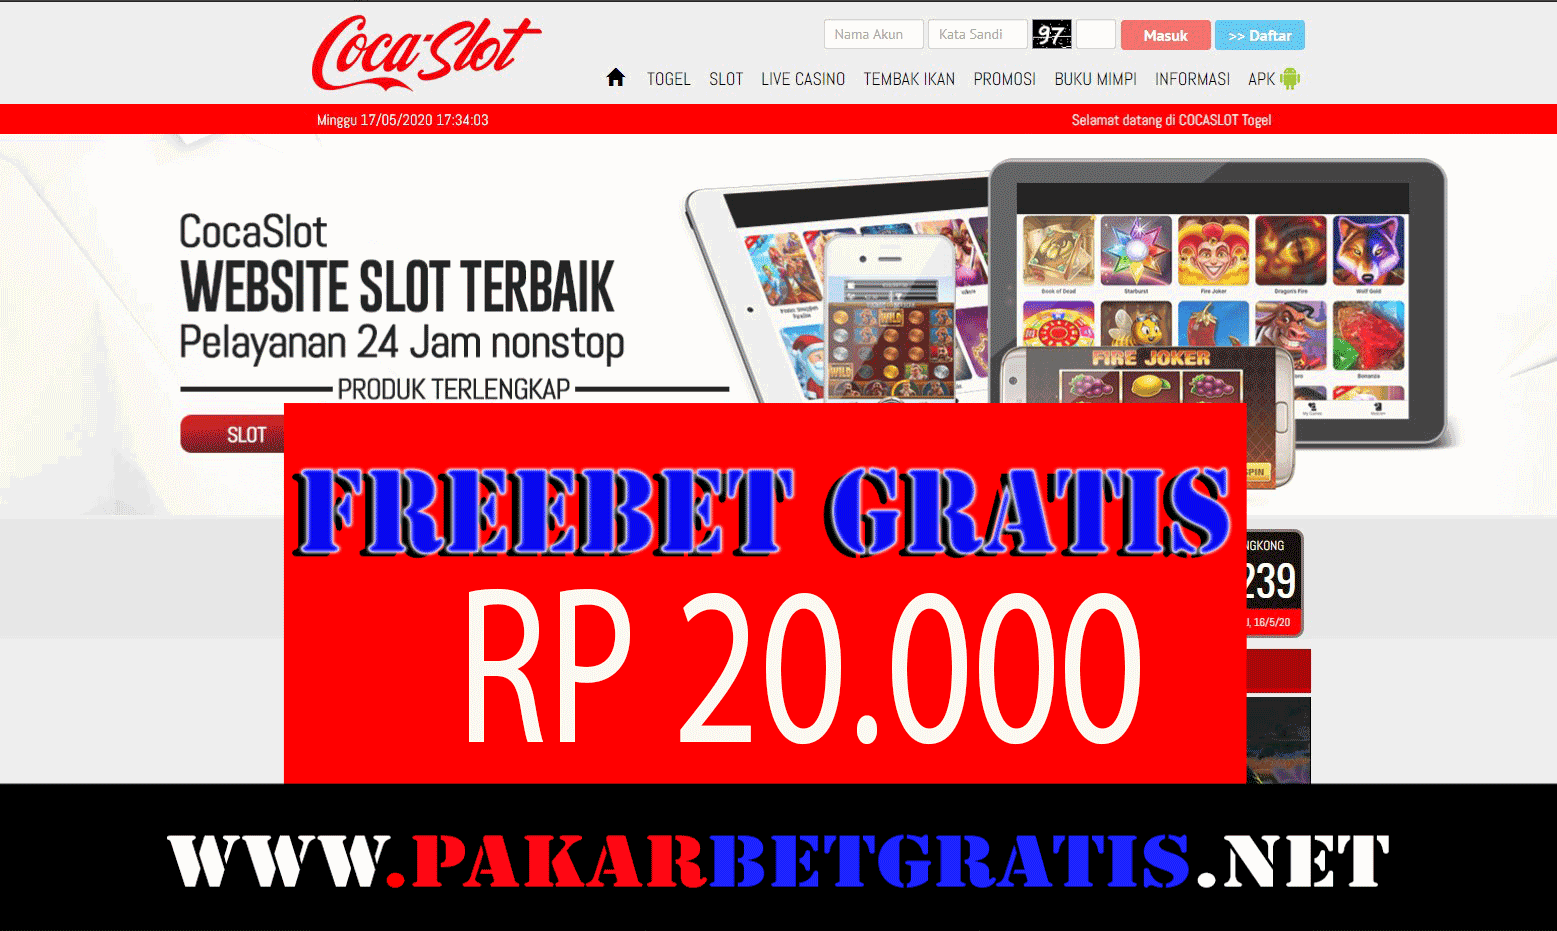 Freebet gratis slot COCAslot Rp 20.000 Tanpa deposit